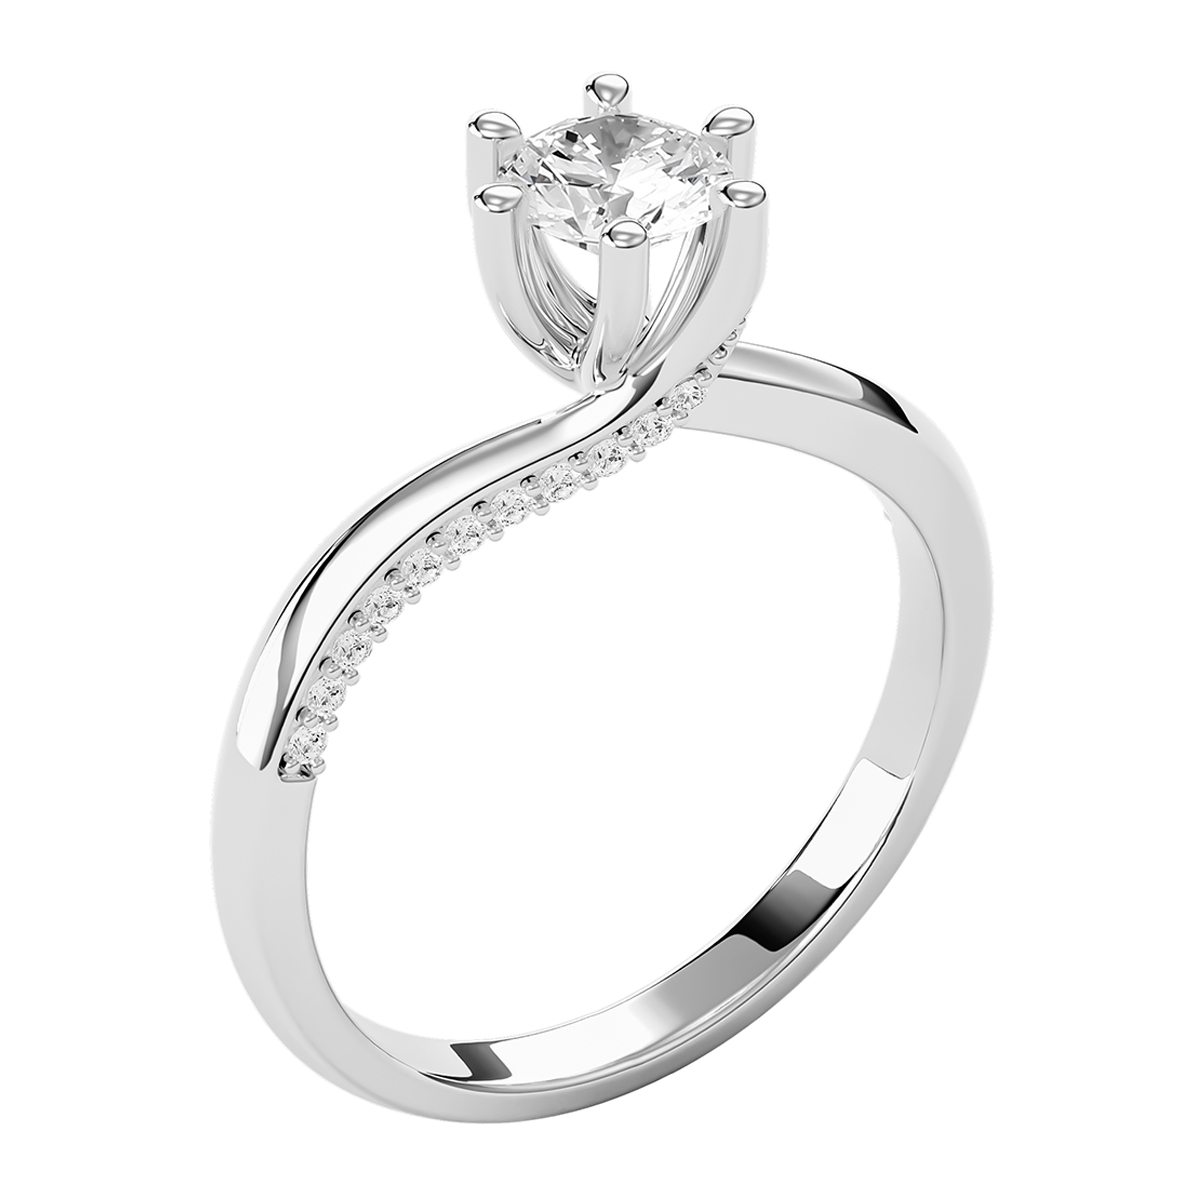 Hình 2: Mẫu nhẫn kim cương tự nhiên sang trọng cho nữ